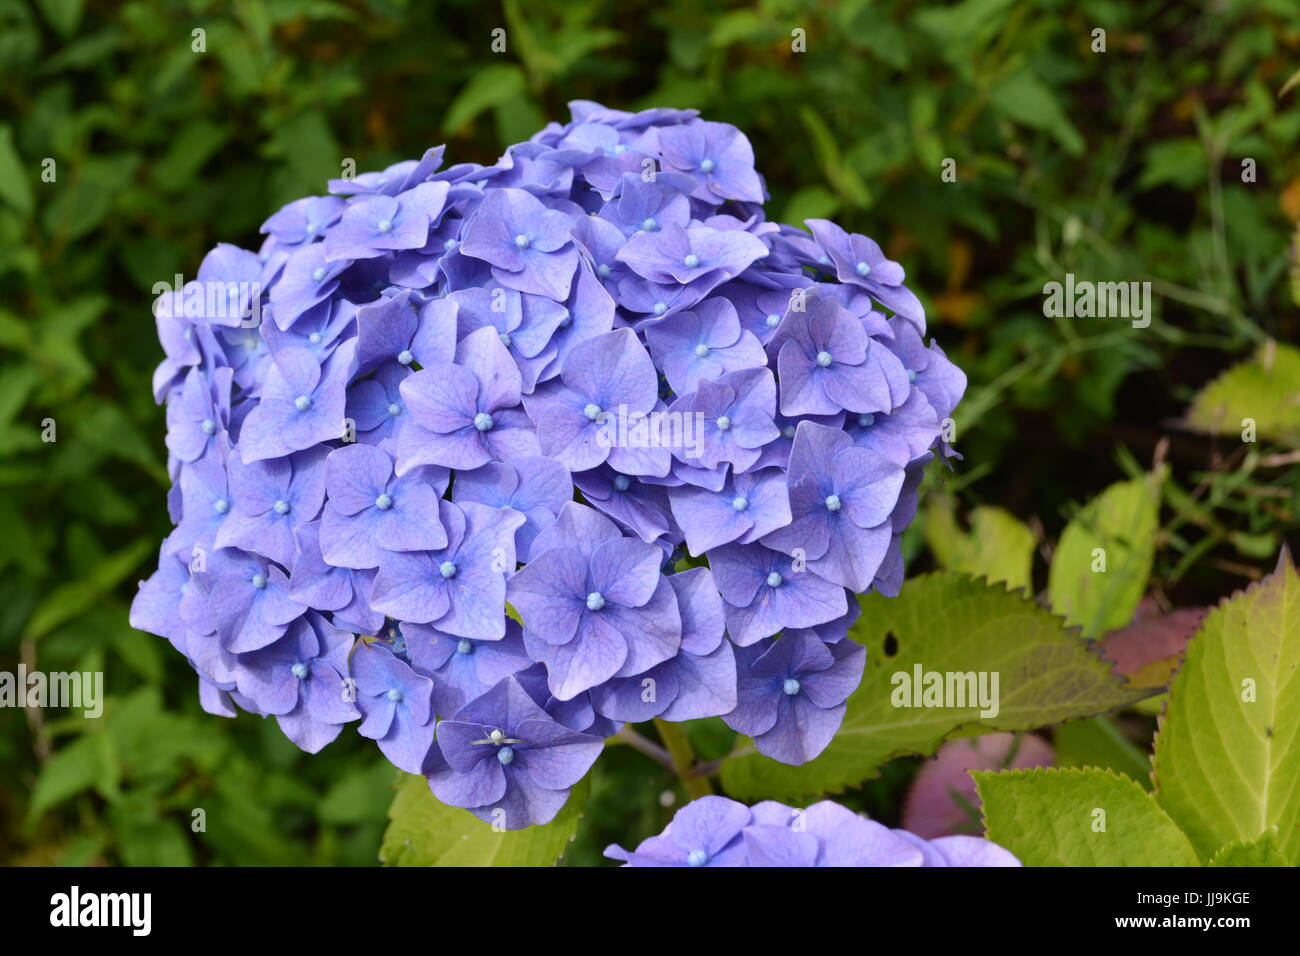 Nahaufnahme eines blühenden Hortensie Pflanze in einem englischen Garten Stockfoto